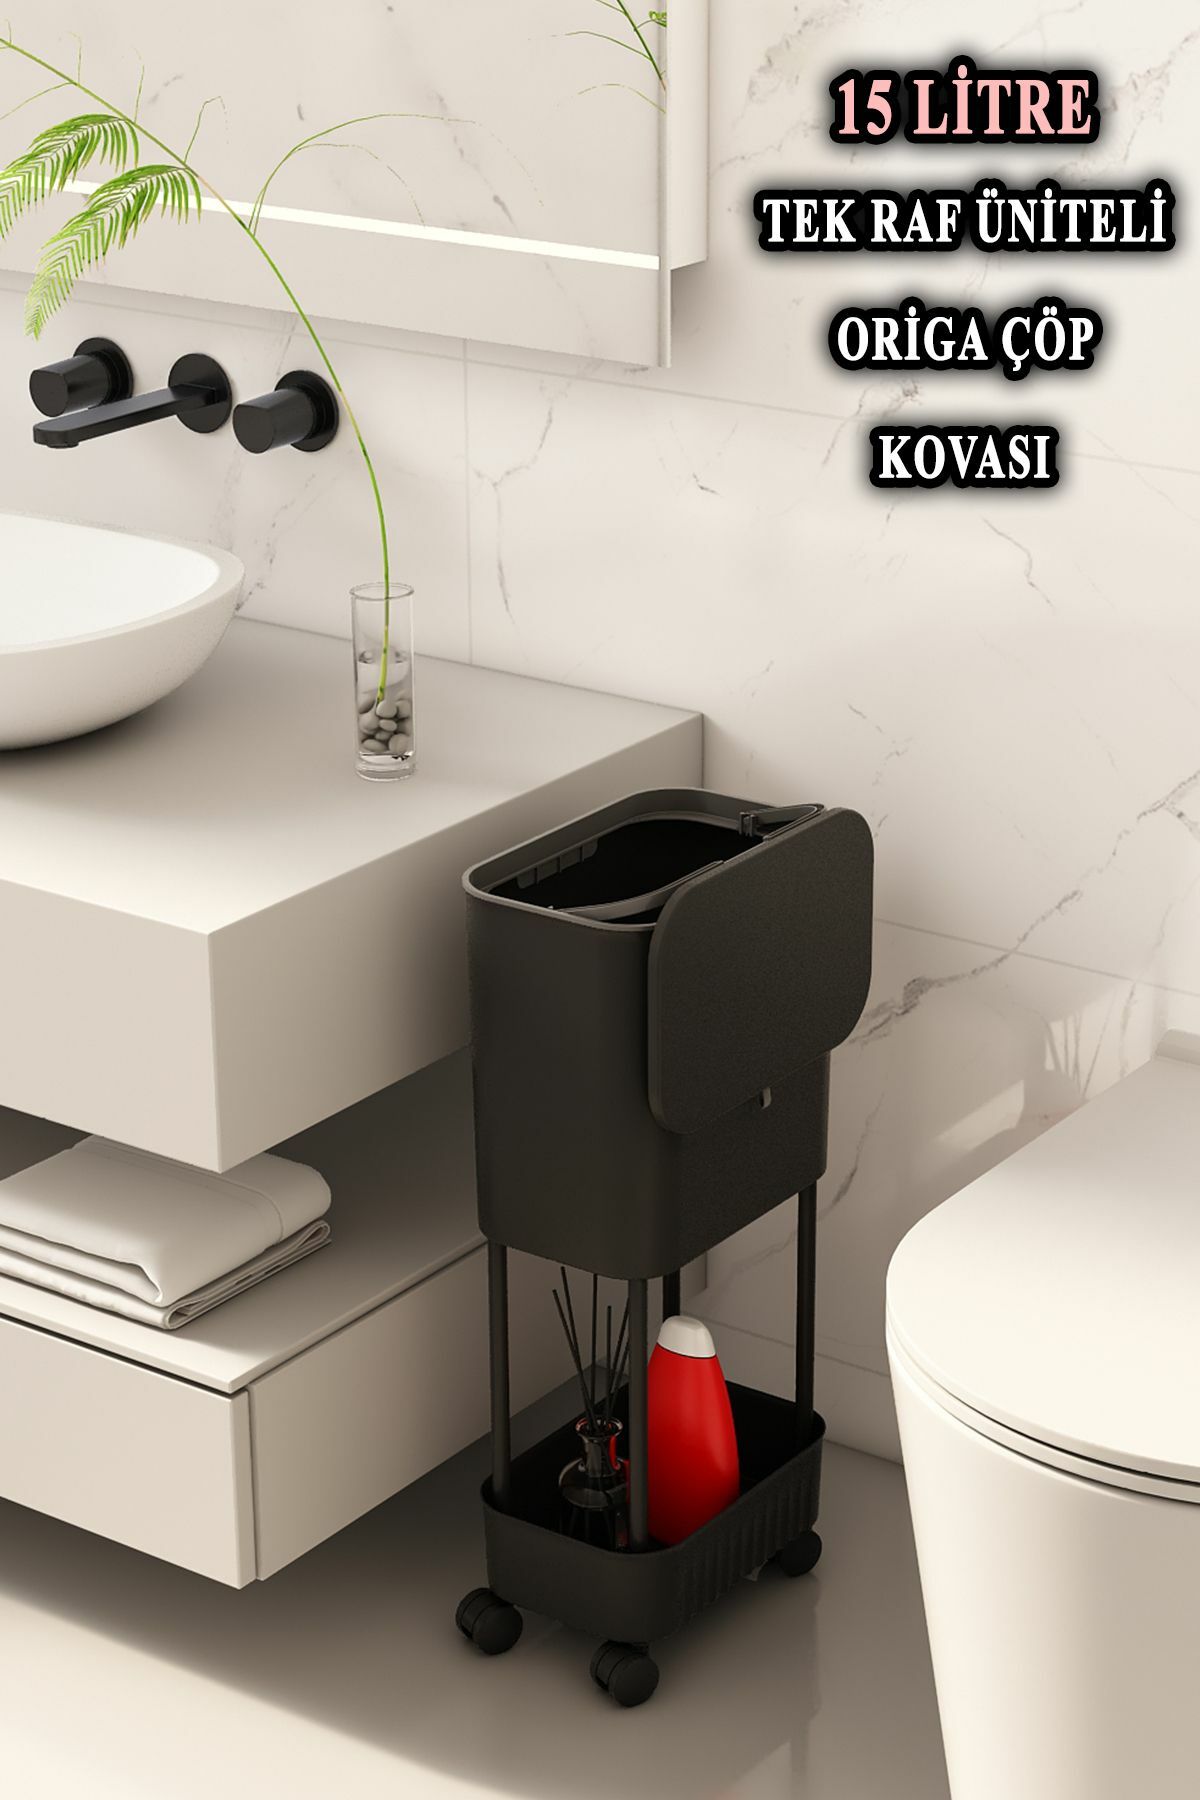 Origa Tek Raf Üniteli Tekerlekli Fonksiyonel Kapaklı Banyo Ve Mutfak Çöp Kovası Siyah